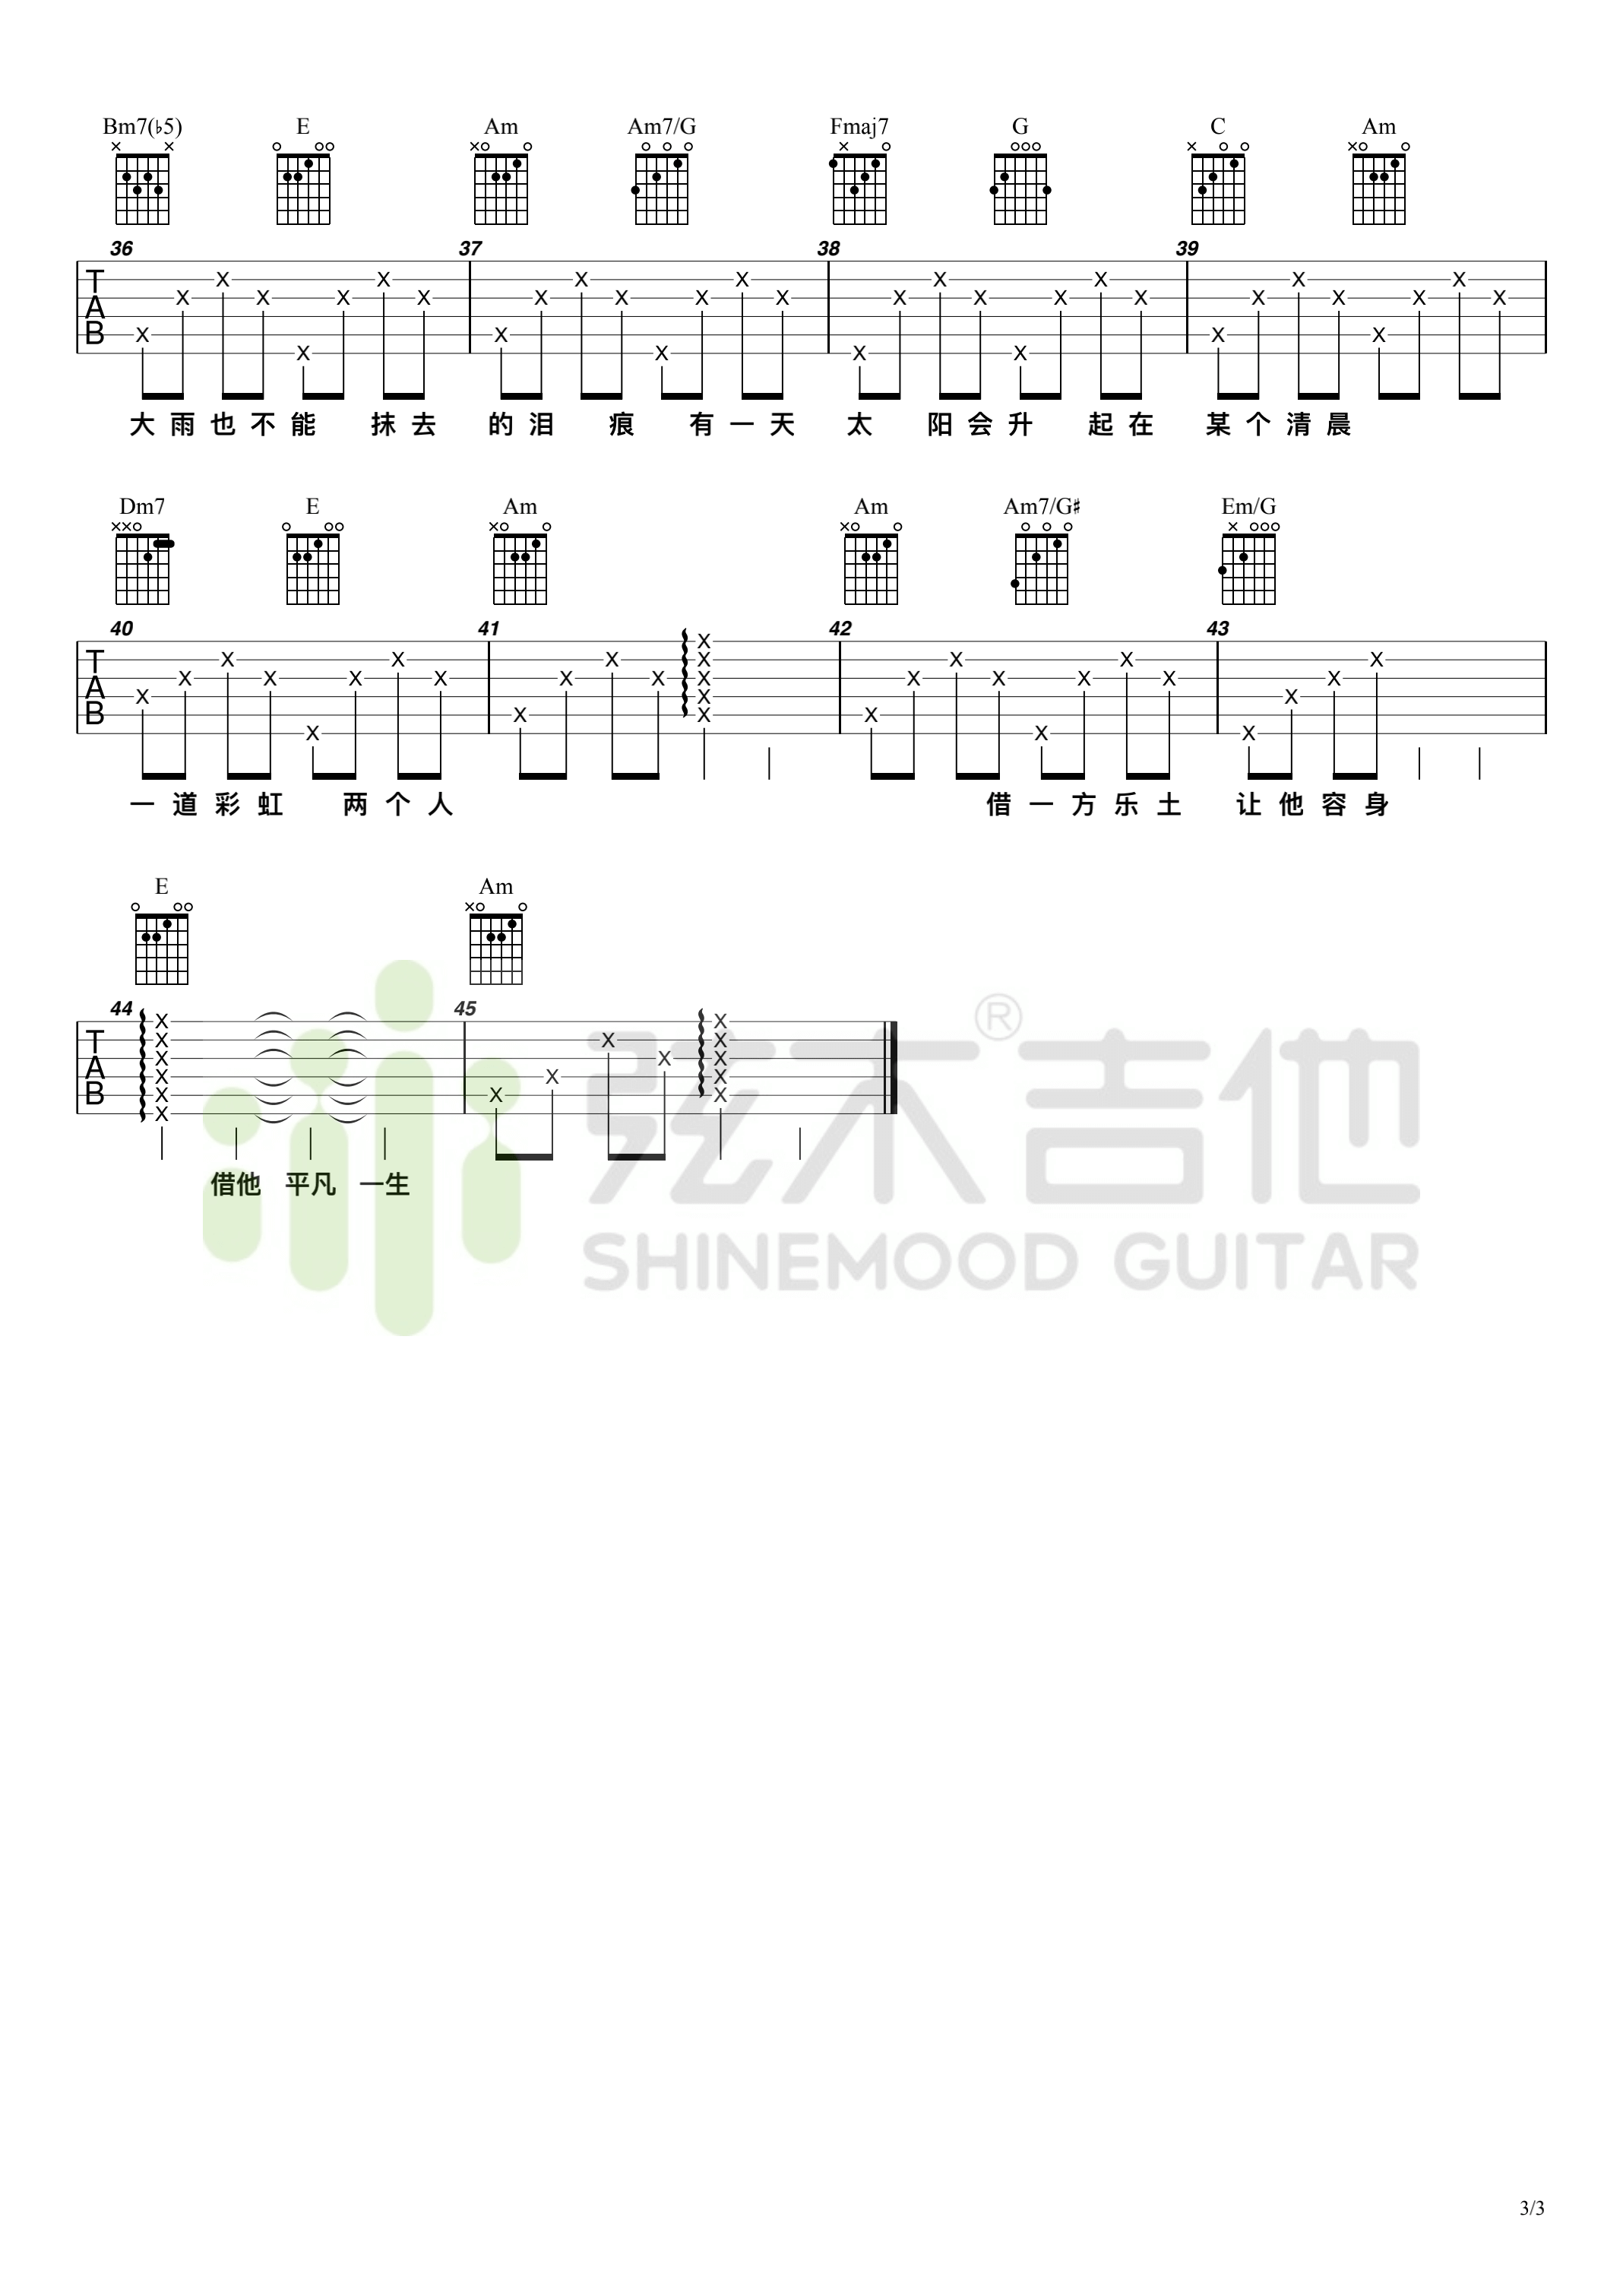 吉他源-毛不易《借》吉他谱-弦木吉他插图4